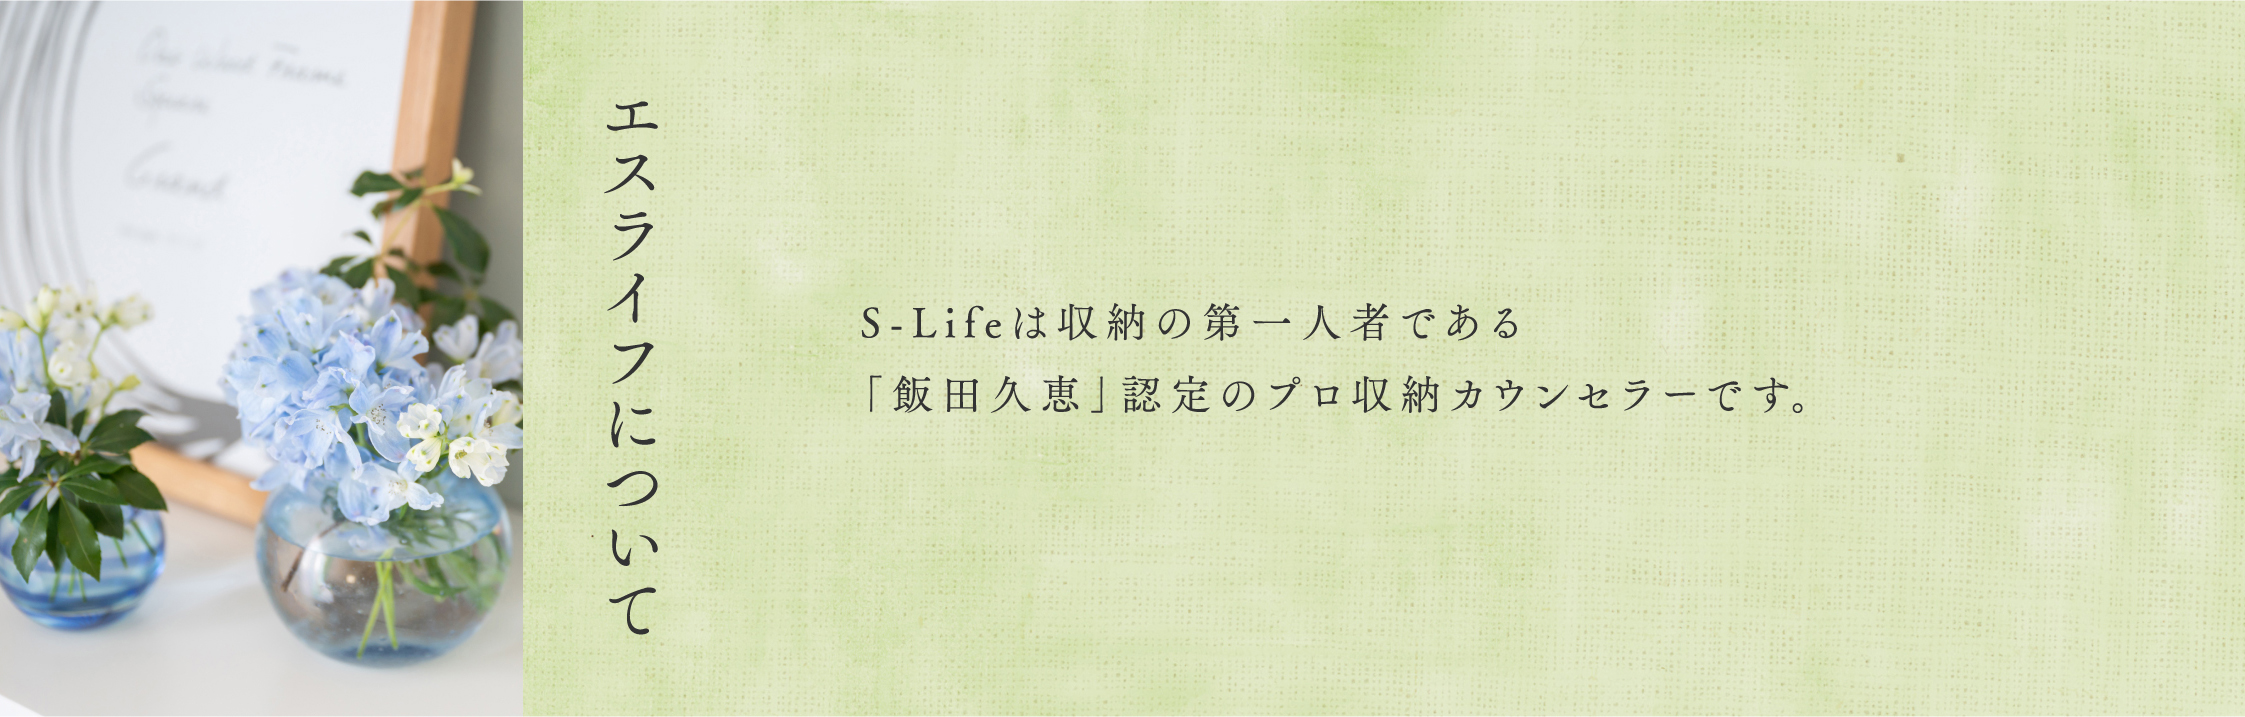 『エスライフについて』S-Lifeは収納の第一人者である「飯田久恵」認定のプロ収納カウンセラーです。